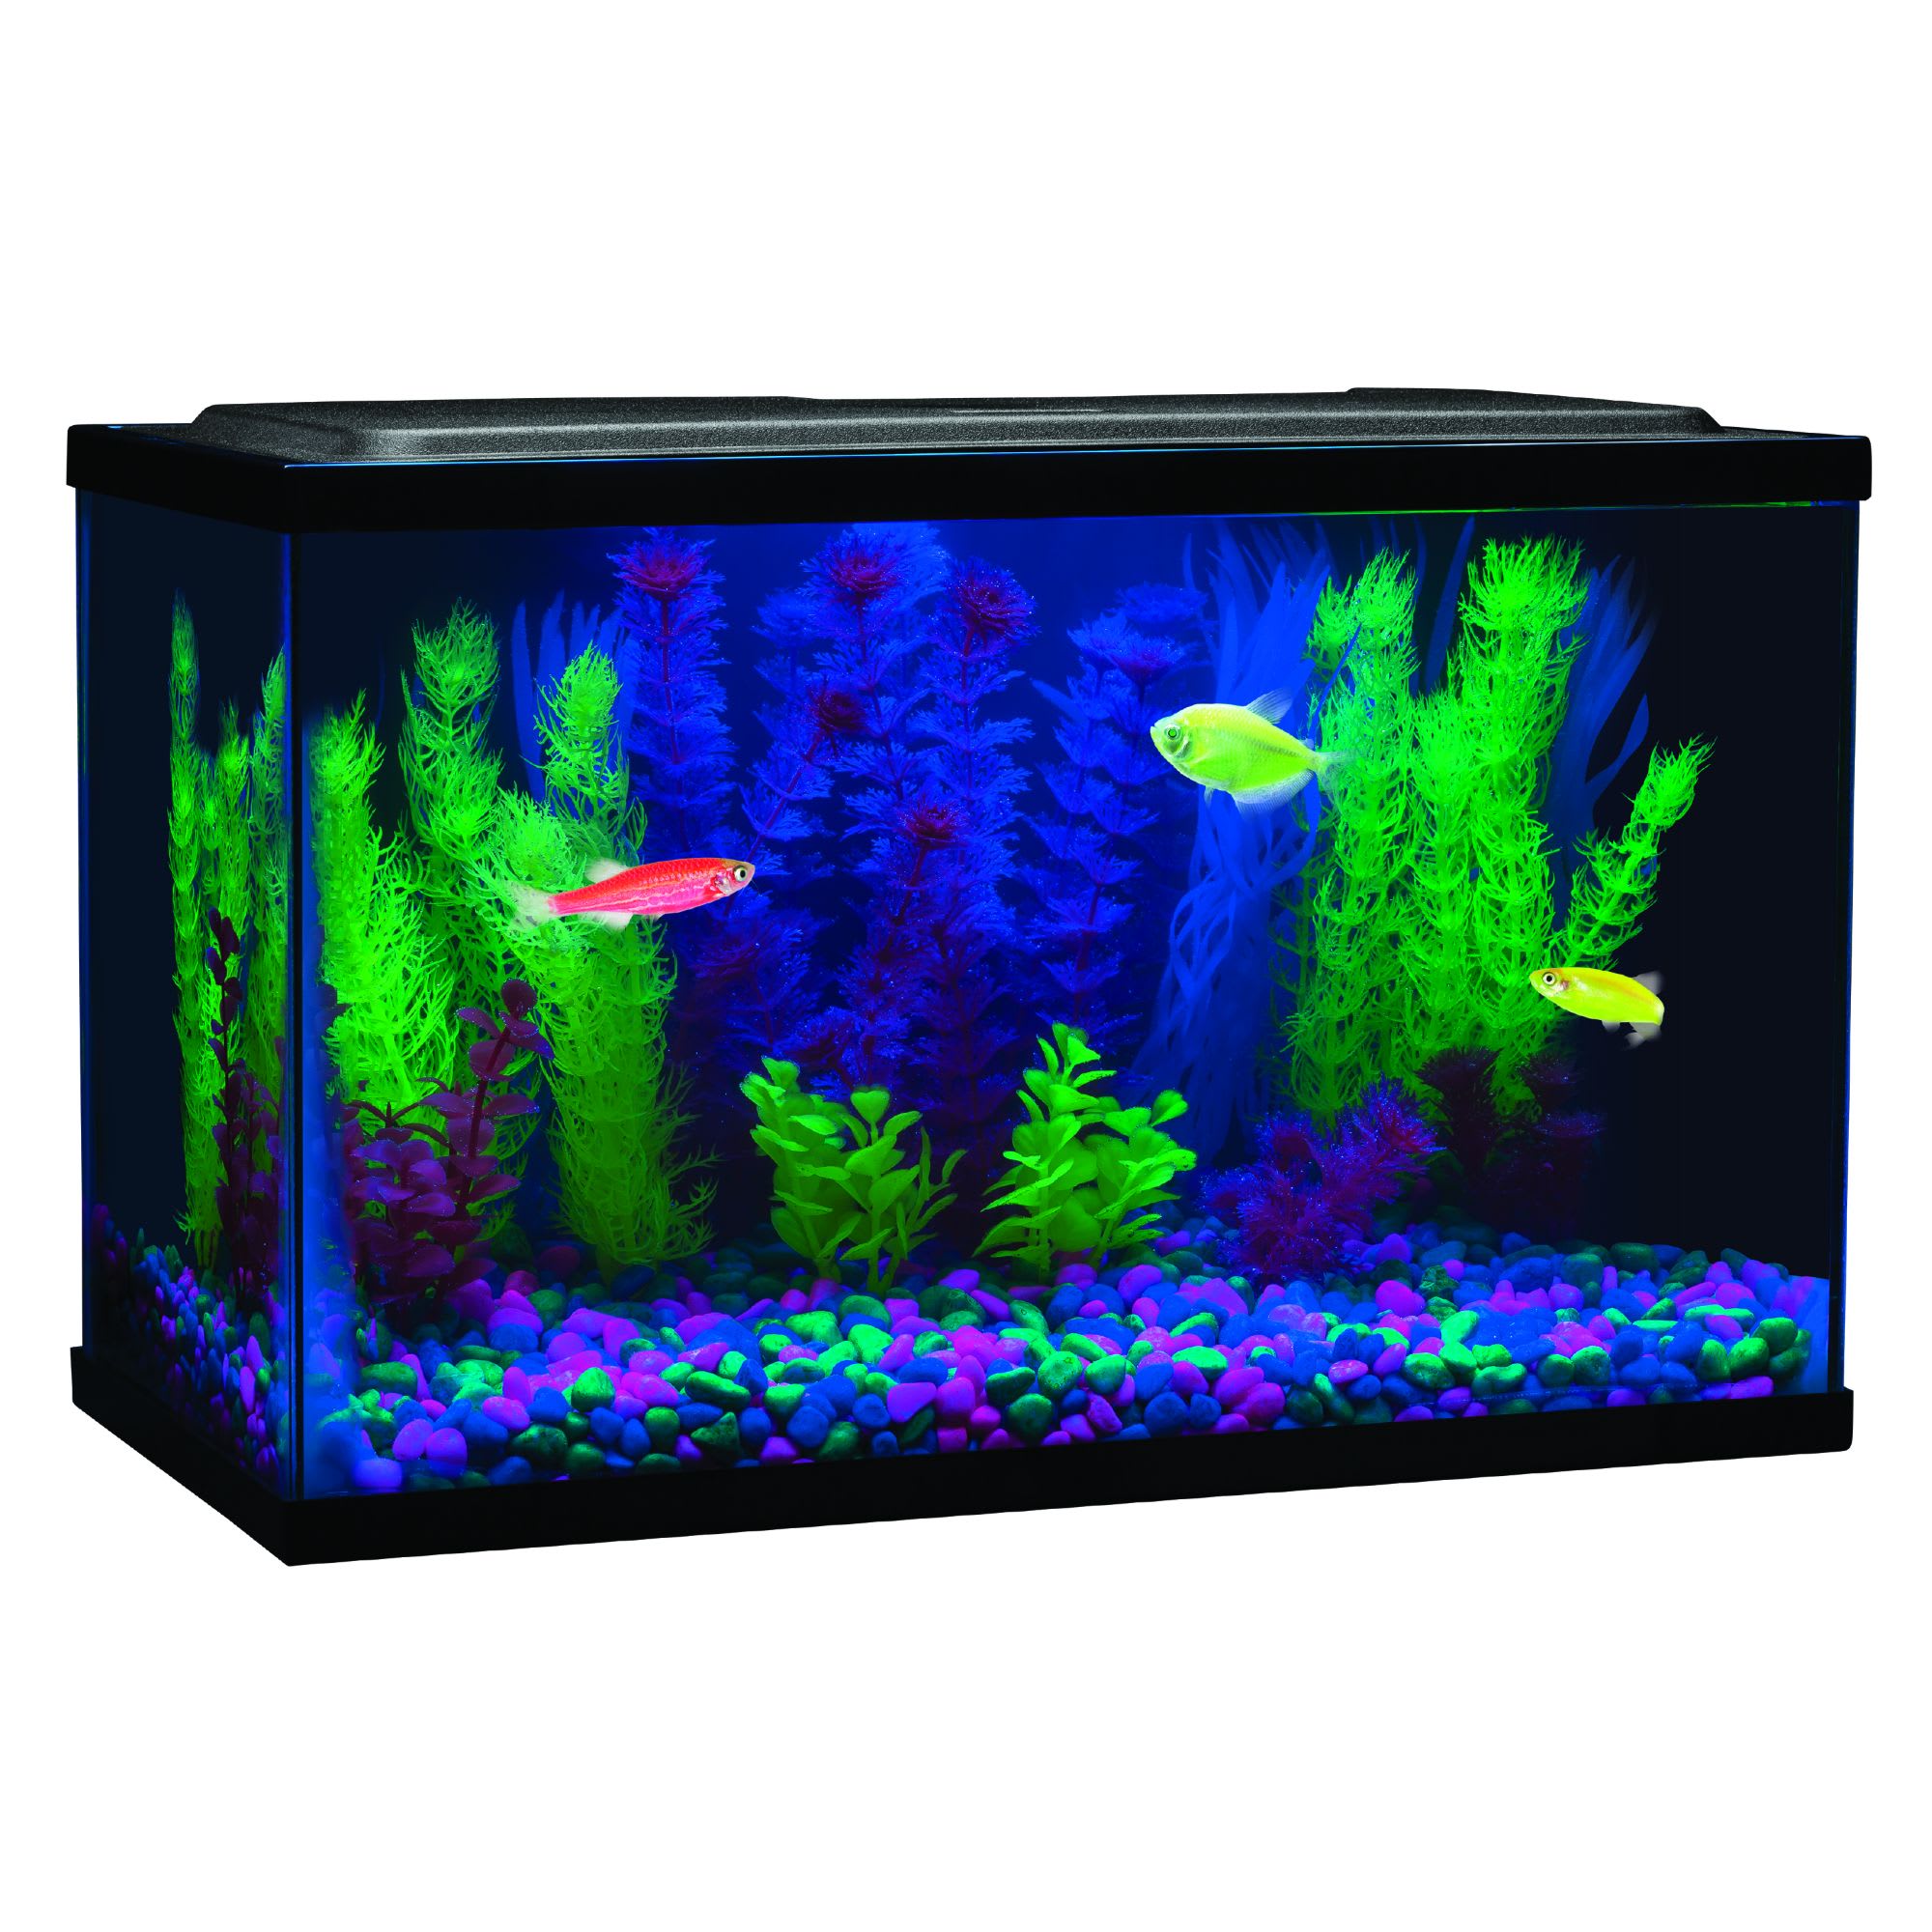 Fish GloFish 20 Gallon Aquarium Kit Planted glofish tank | Fish tank them.....